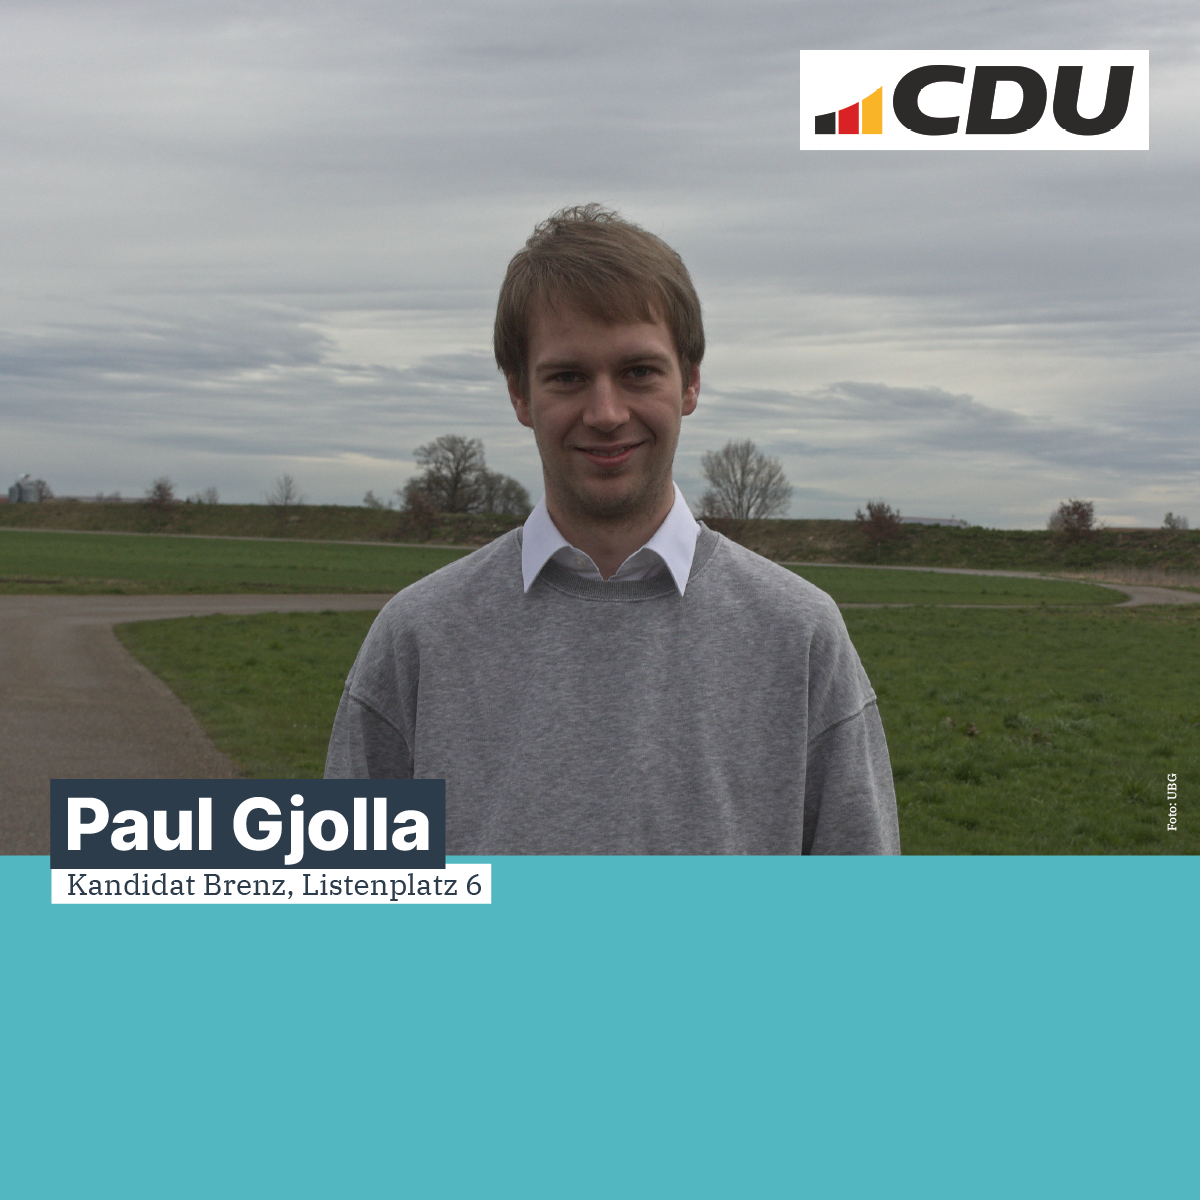  Paul Gjolla